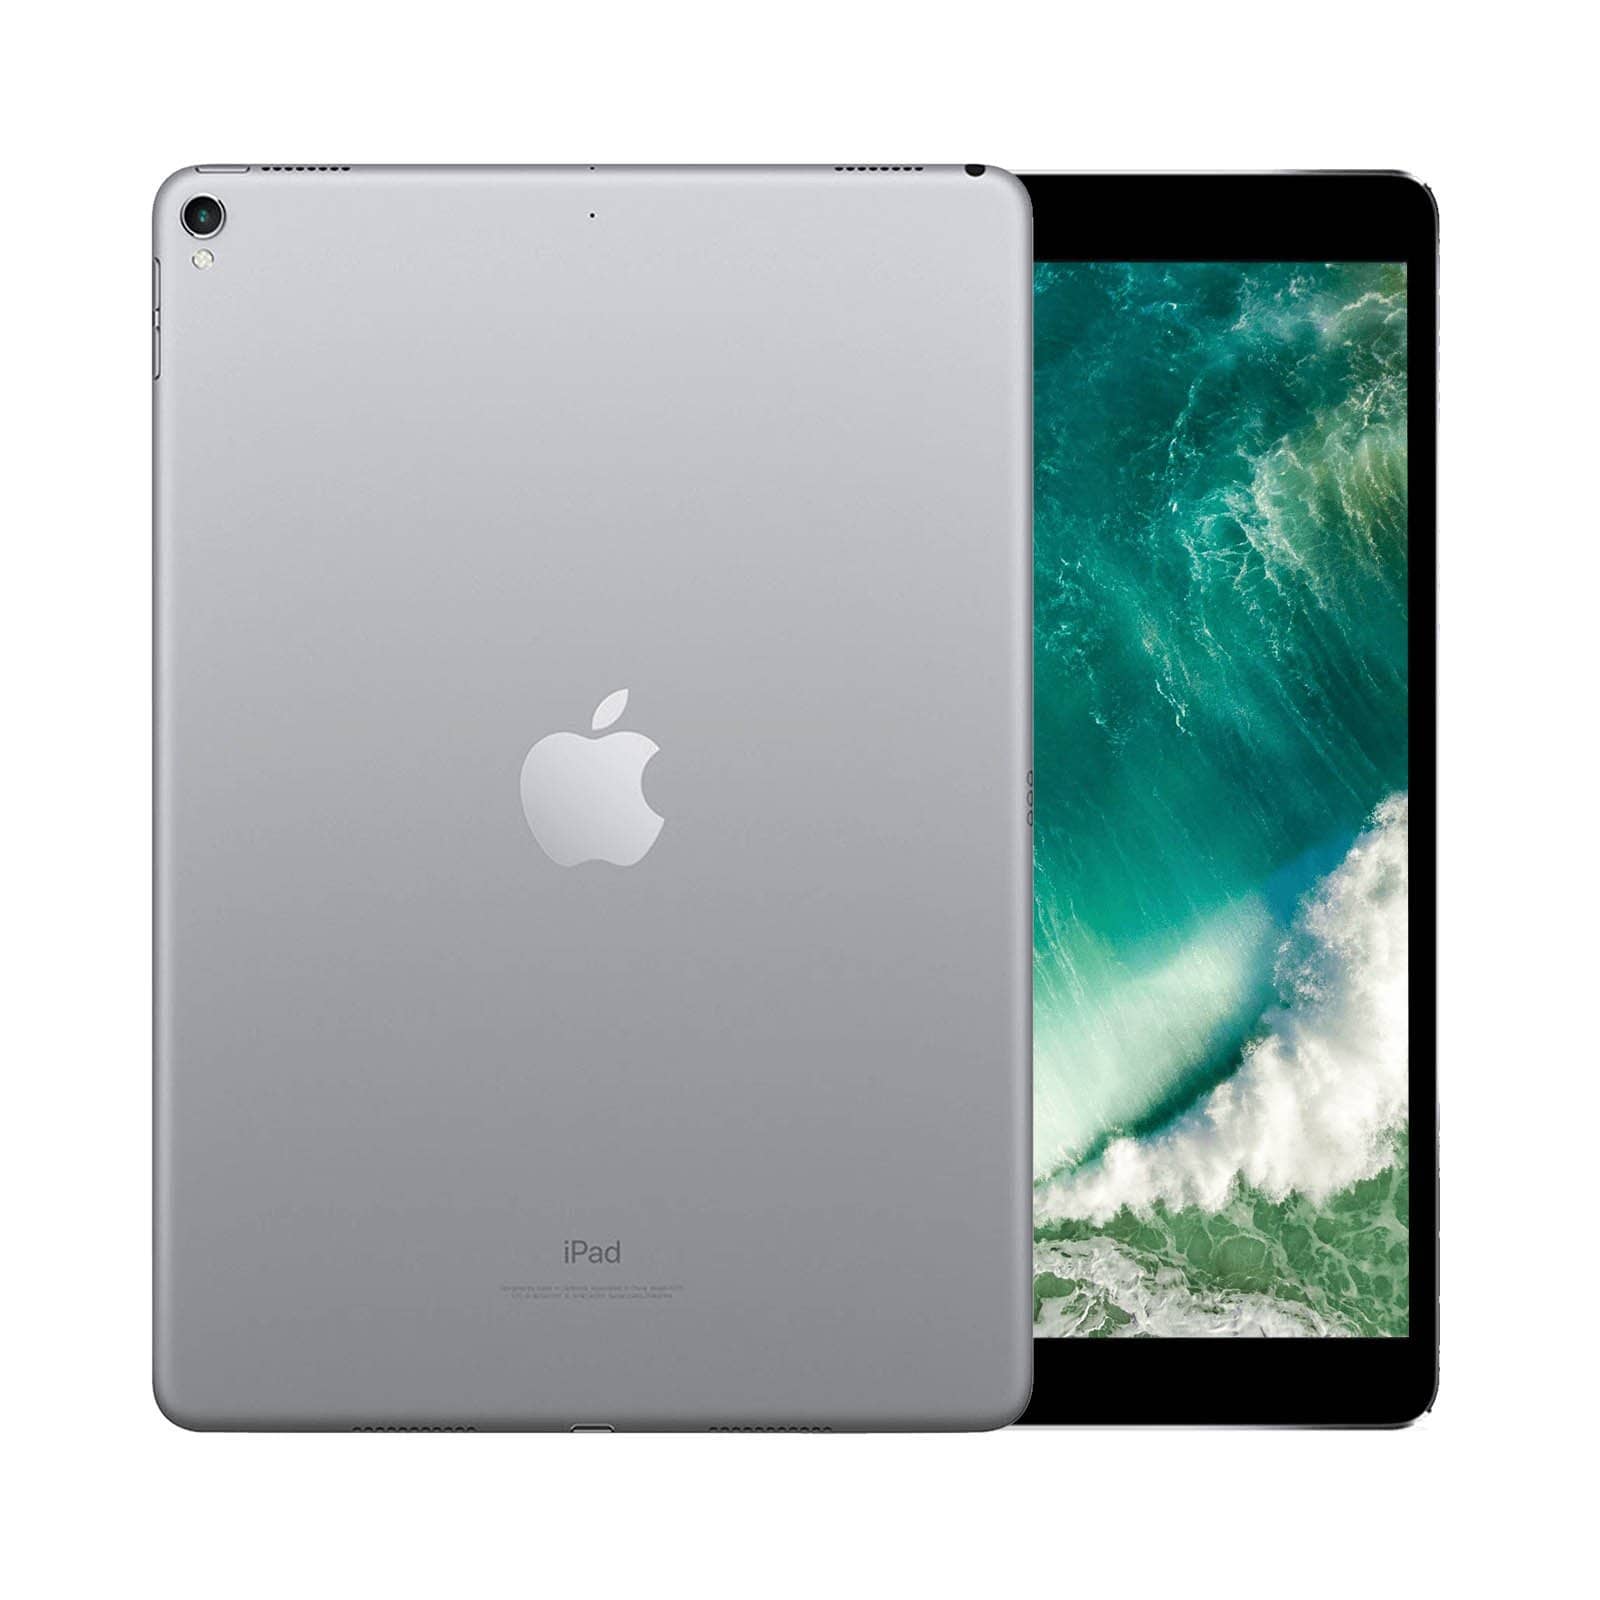 iPad Pro 10.5 Inch 64GB Space Grey Very Good - WiFi 64GB Space Grey Very Good